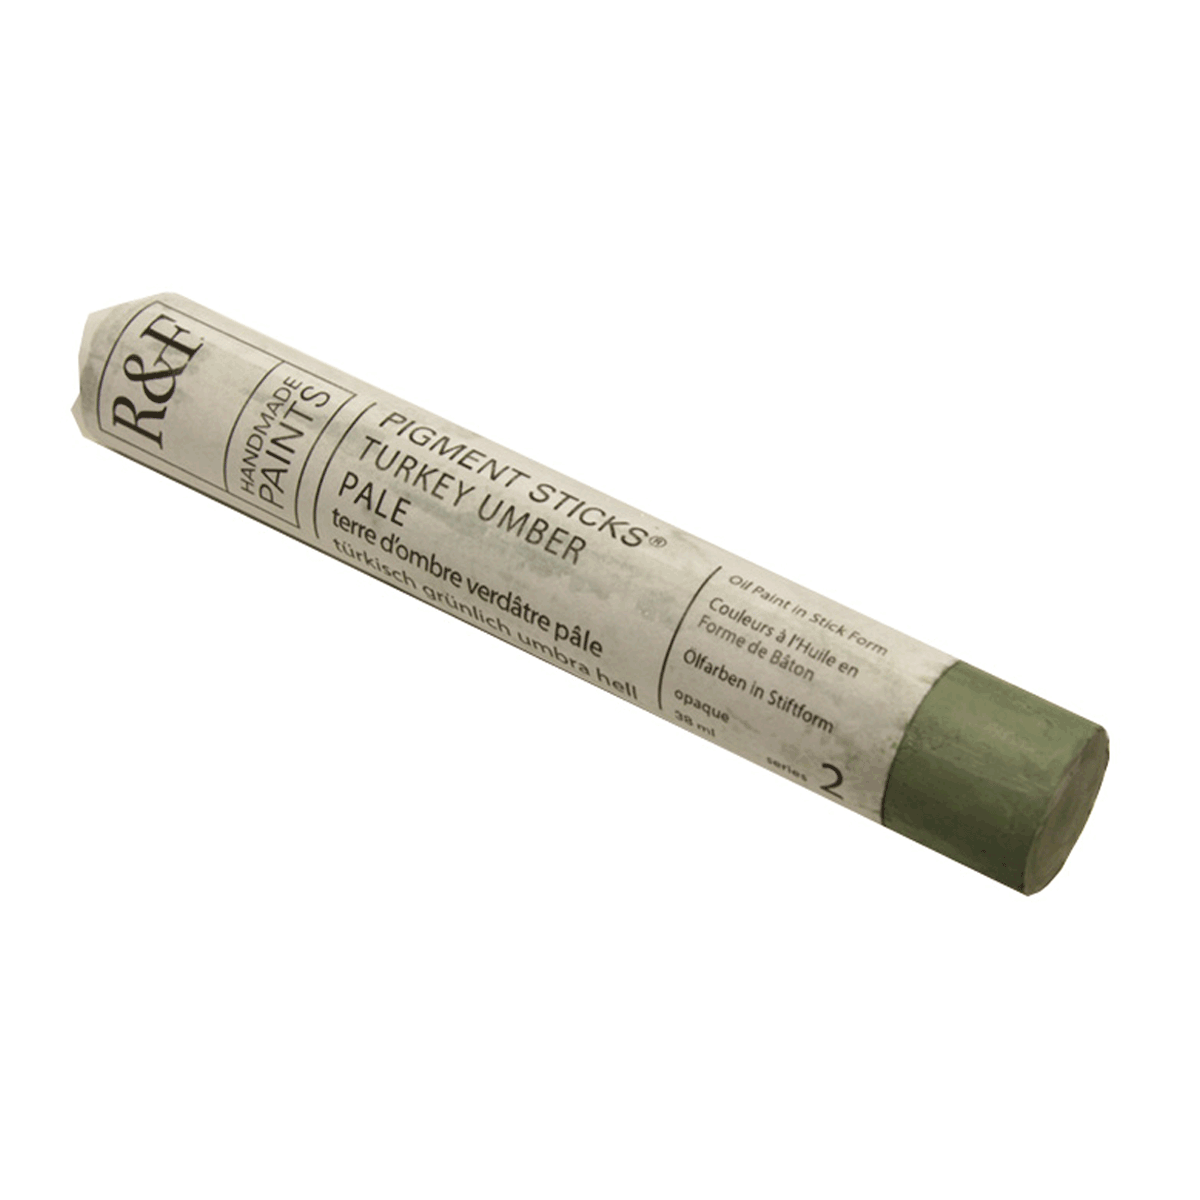 R&F Oil Pigment Stick, Turkey Umber Pale 38ml (1.3oz)